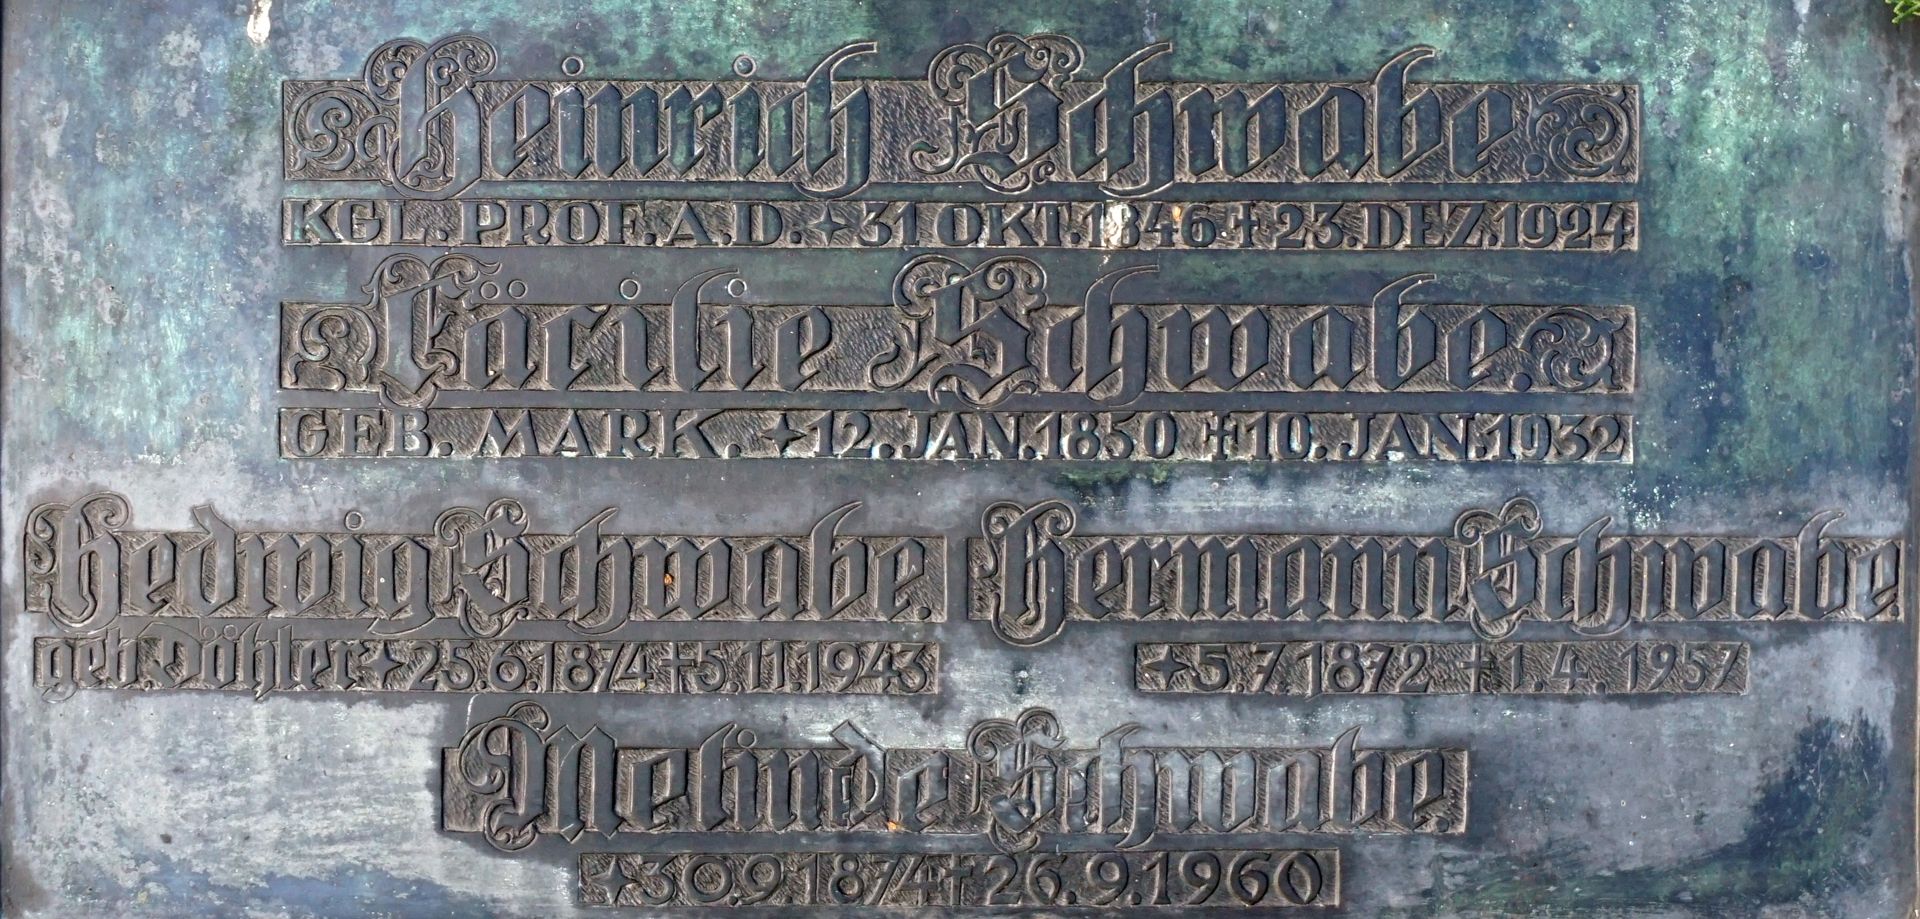 Johannisfriedhof grave site 778 Inscription